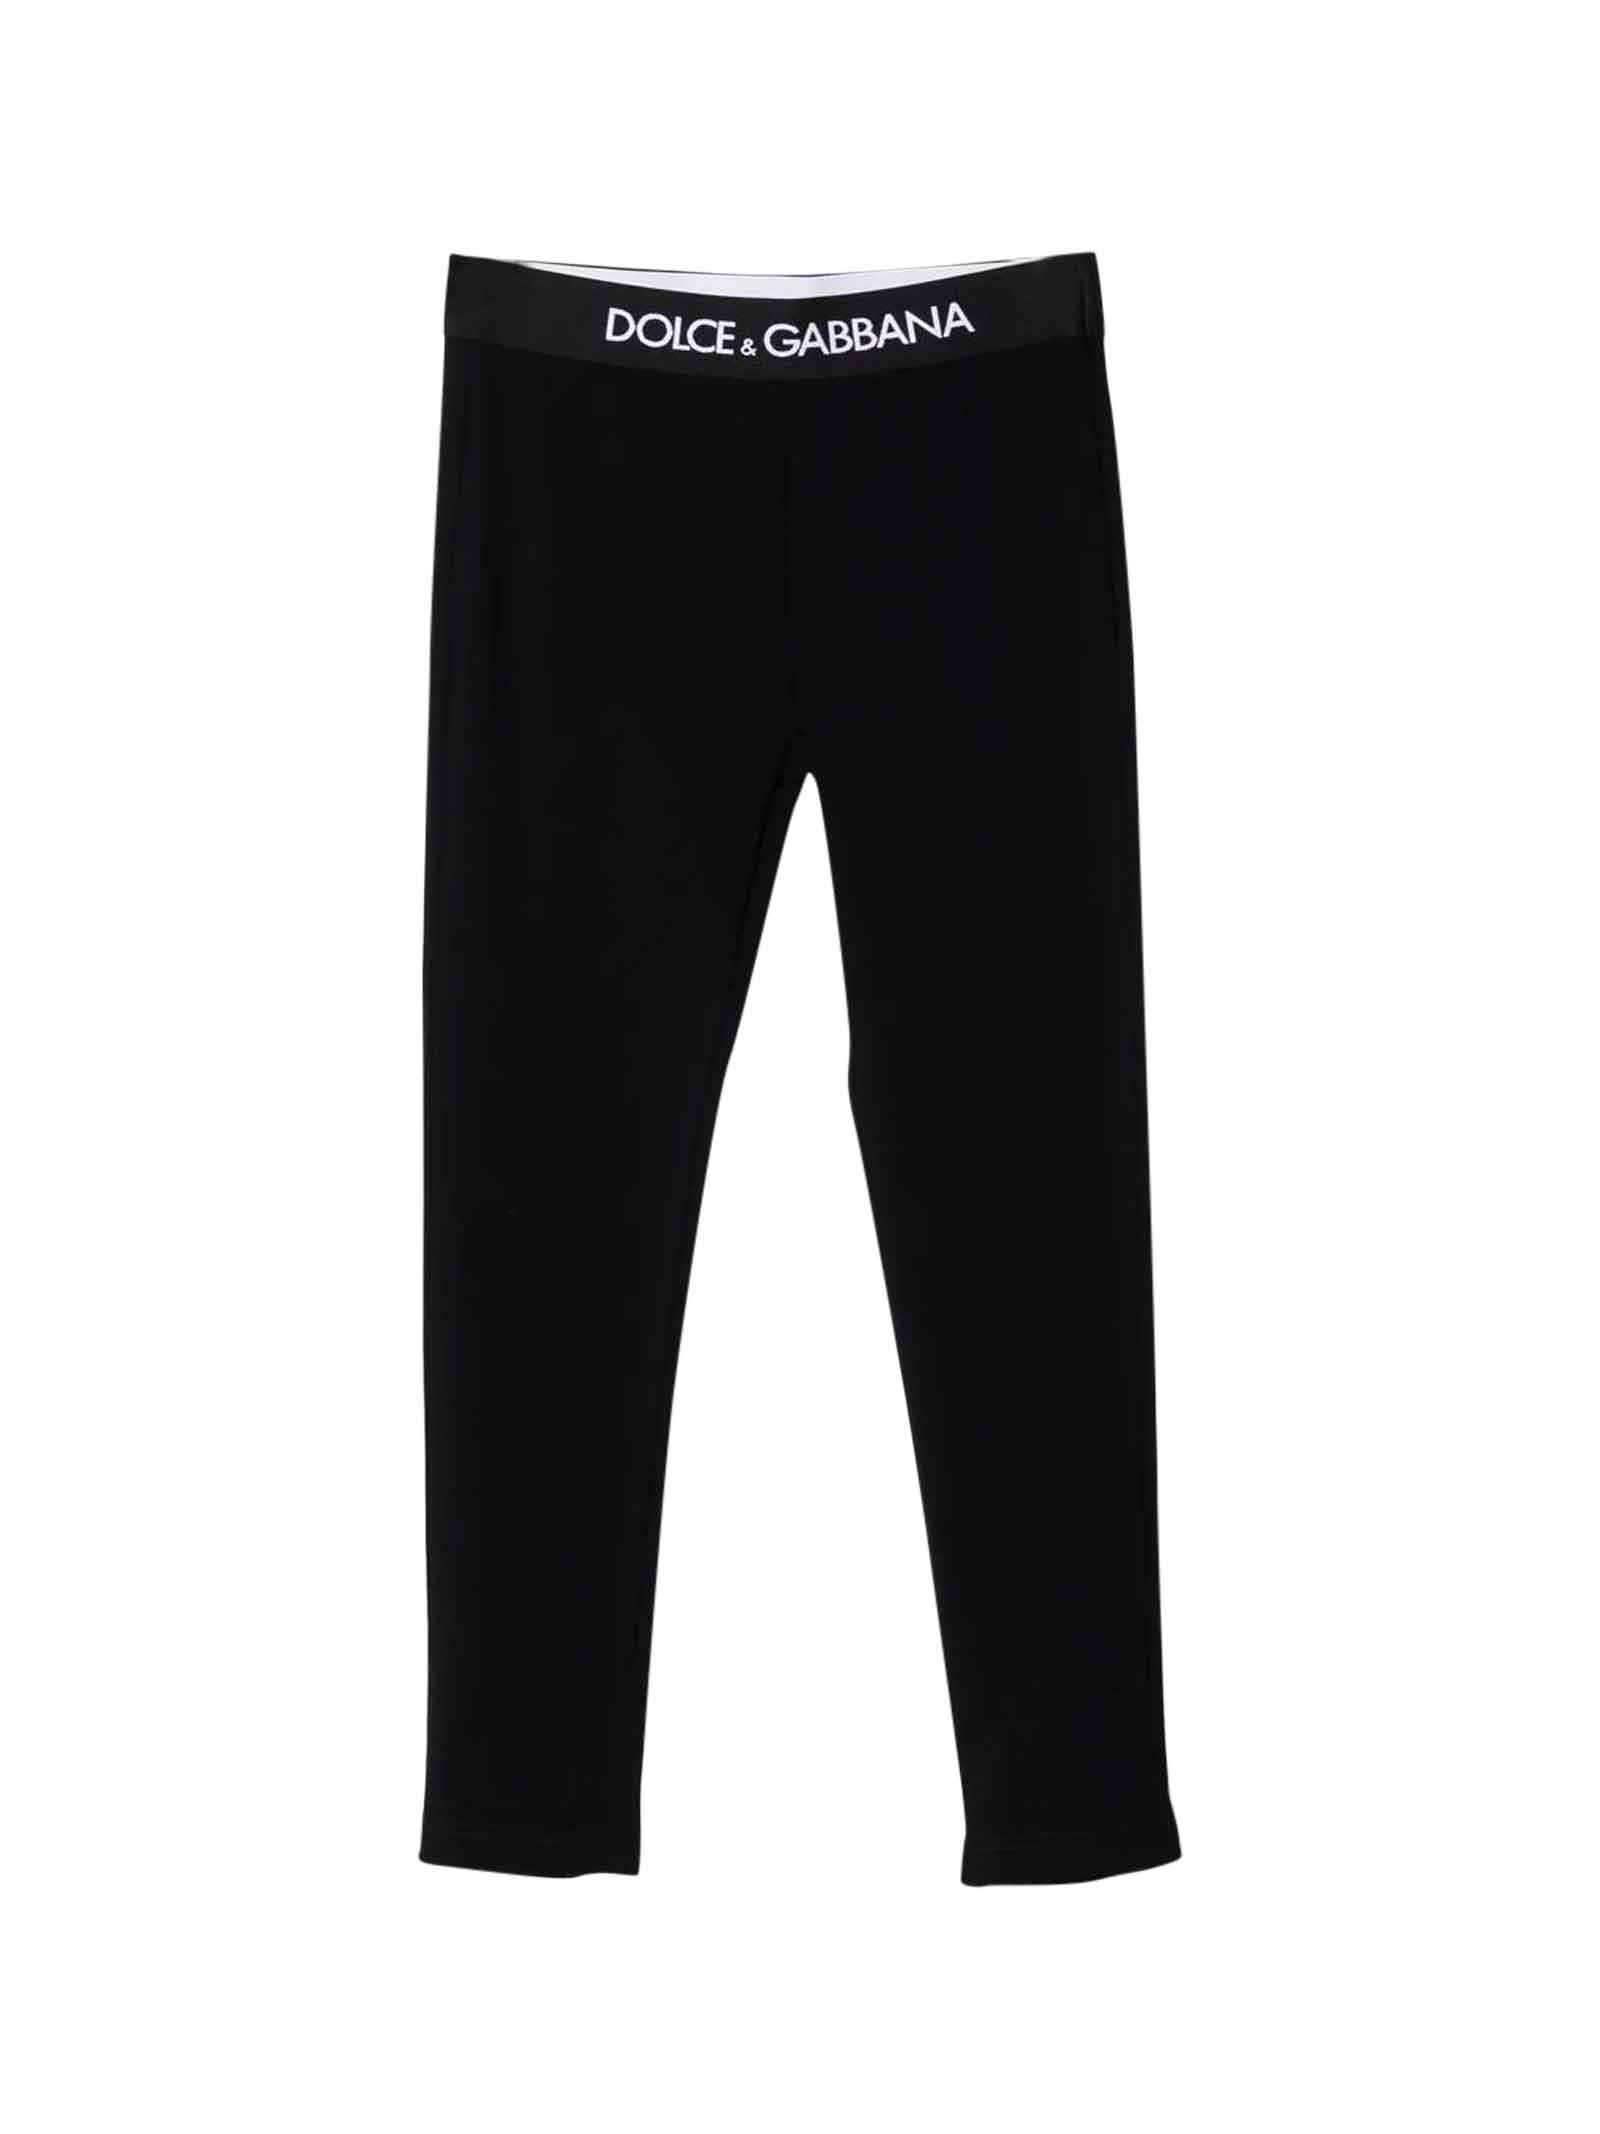 Dolce & Gabbana Black Leggings